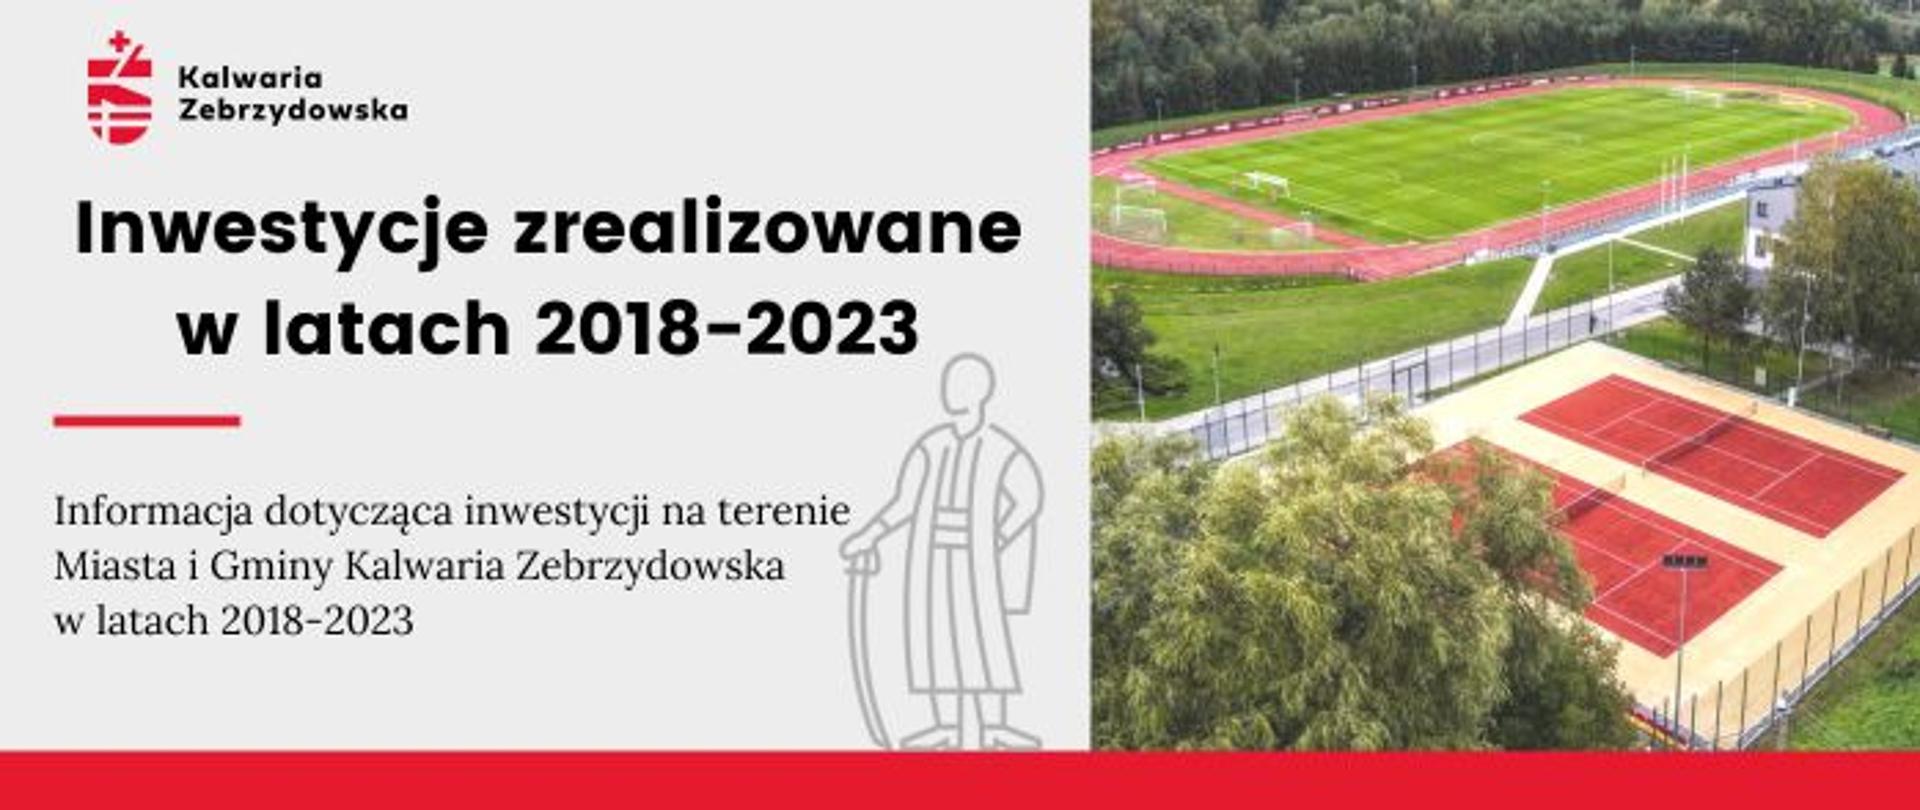 Plansza informacyjna po lewej treść - Informacja dotycząca inwestycji na terenie Miasta i Gminy Kalwaria Zebrzydowska w latach 2018-2023, po prawej boisko sportowe i kort tenisowy z lotu ptaka. 